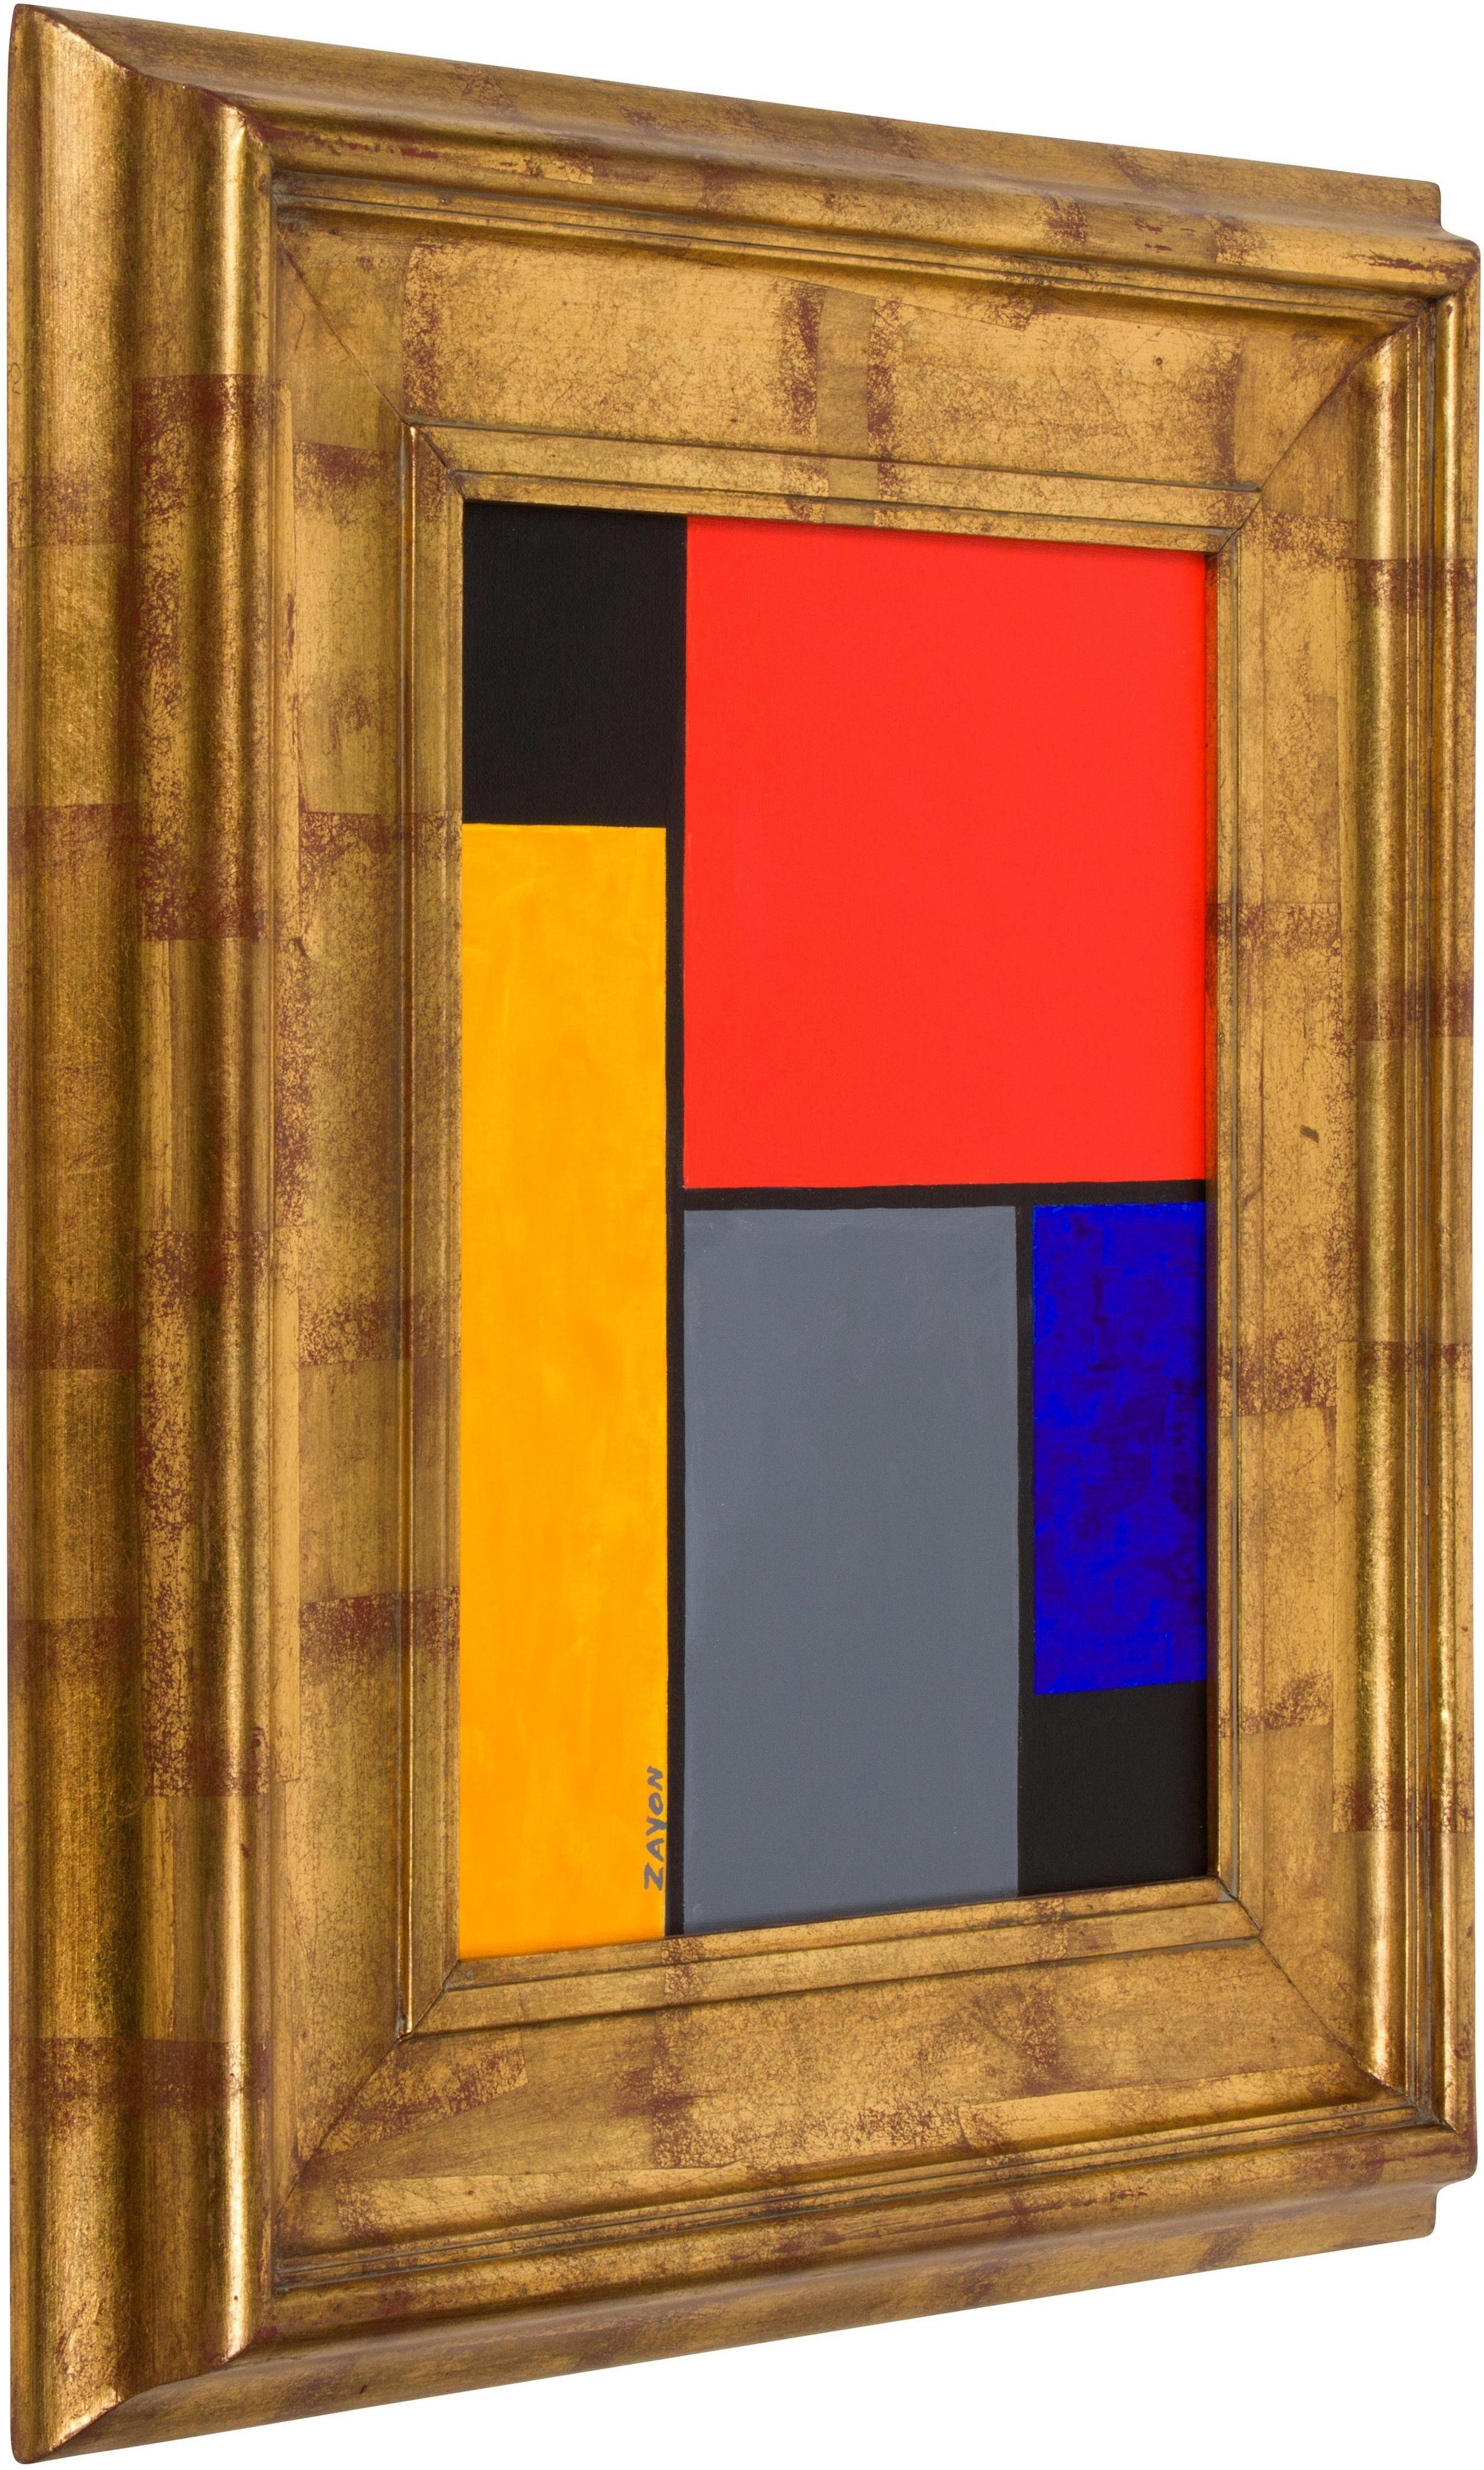 Farbenfrohes geometrisches abstraktes Öl auf Karton des renommierten Künstlers Seymour Zayon.

Seymour Zayon, geboren 1930, ist ein zeitgenössischer Maler aus Philadelphia und Umgebung, der für seine farbenfrohen geometrisch-abstrakten